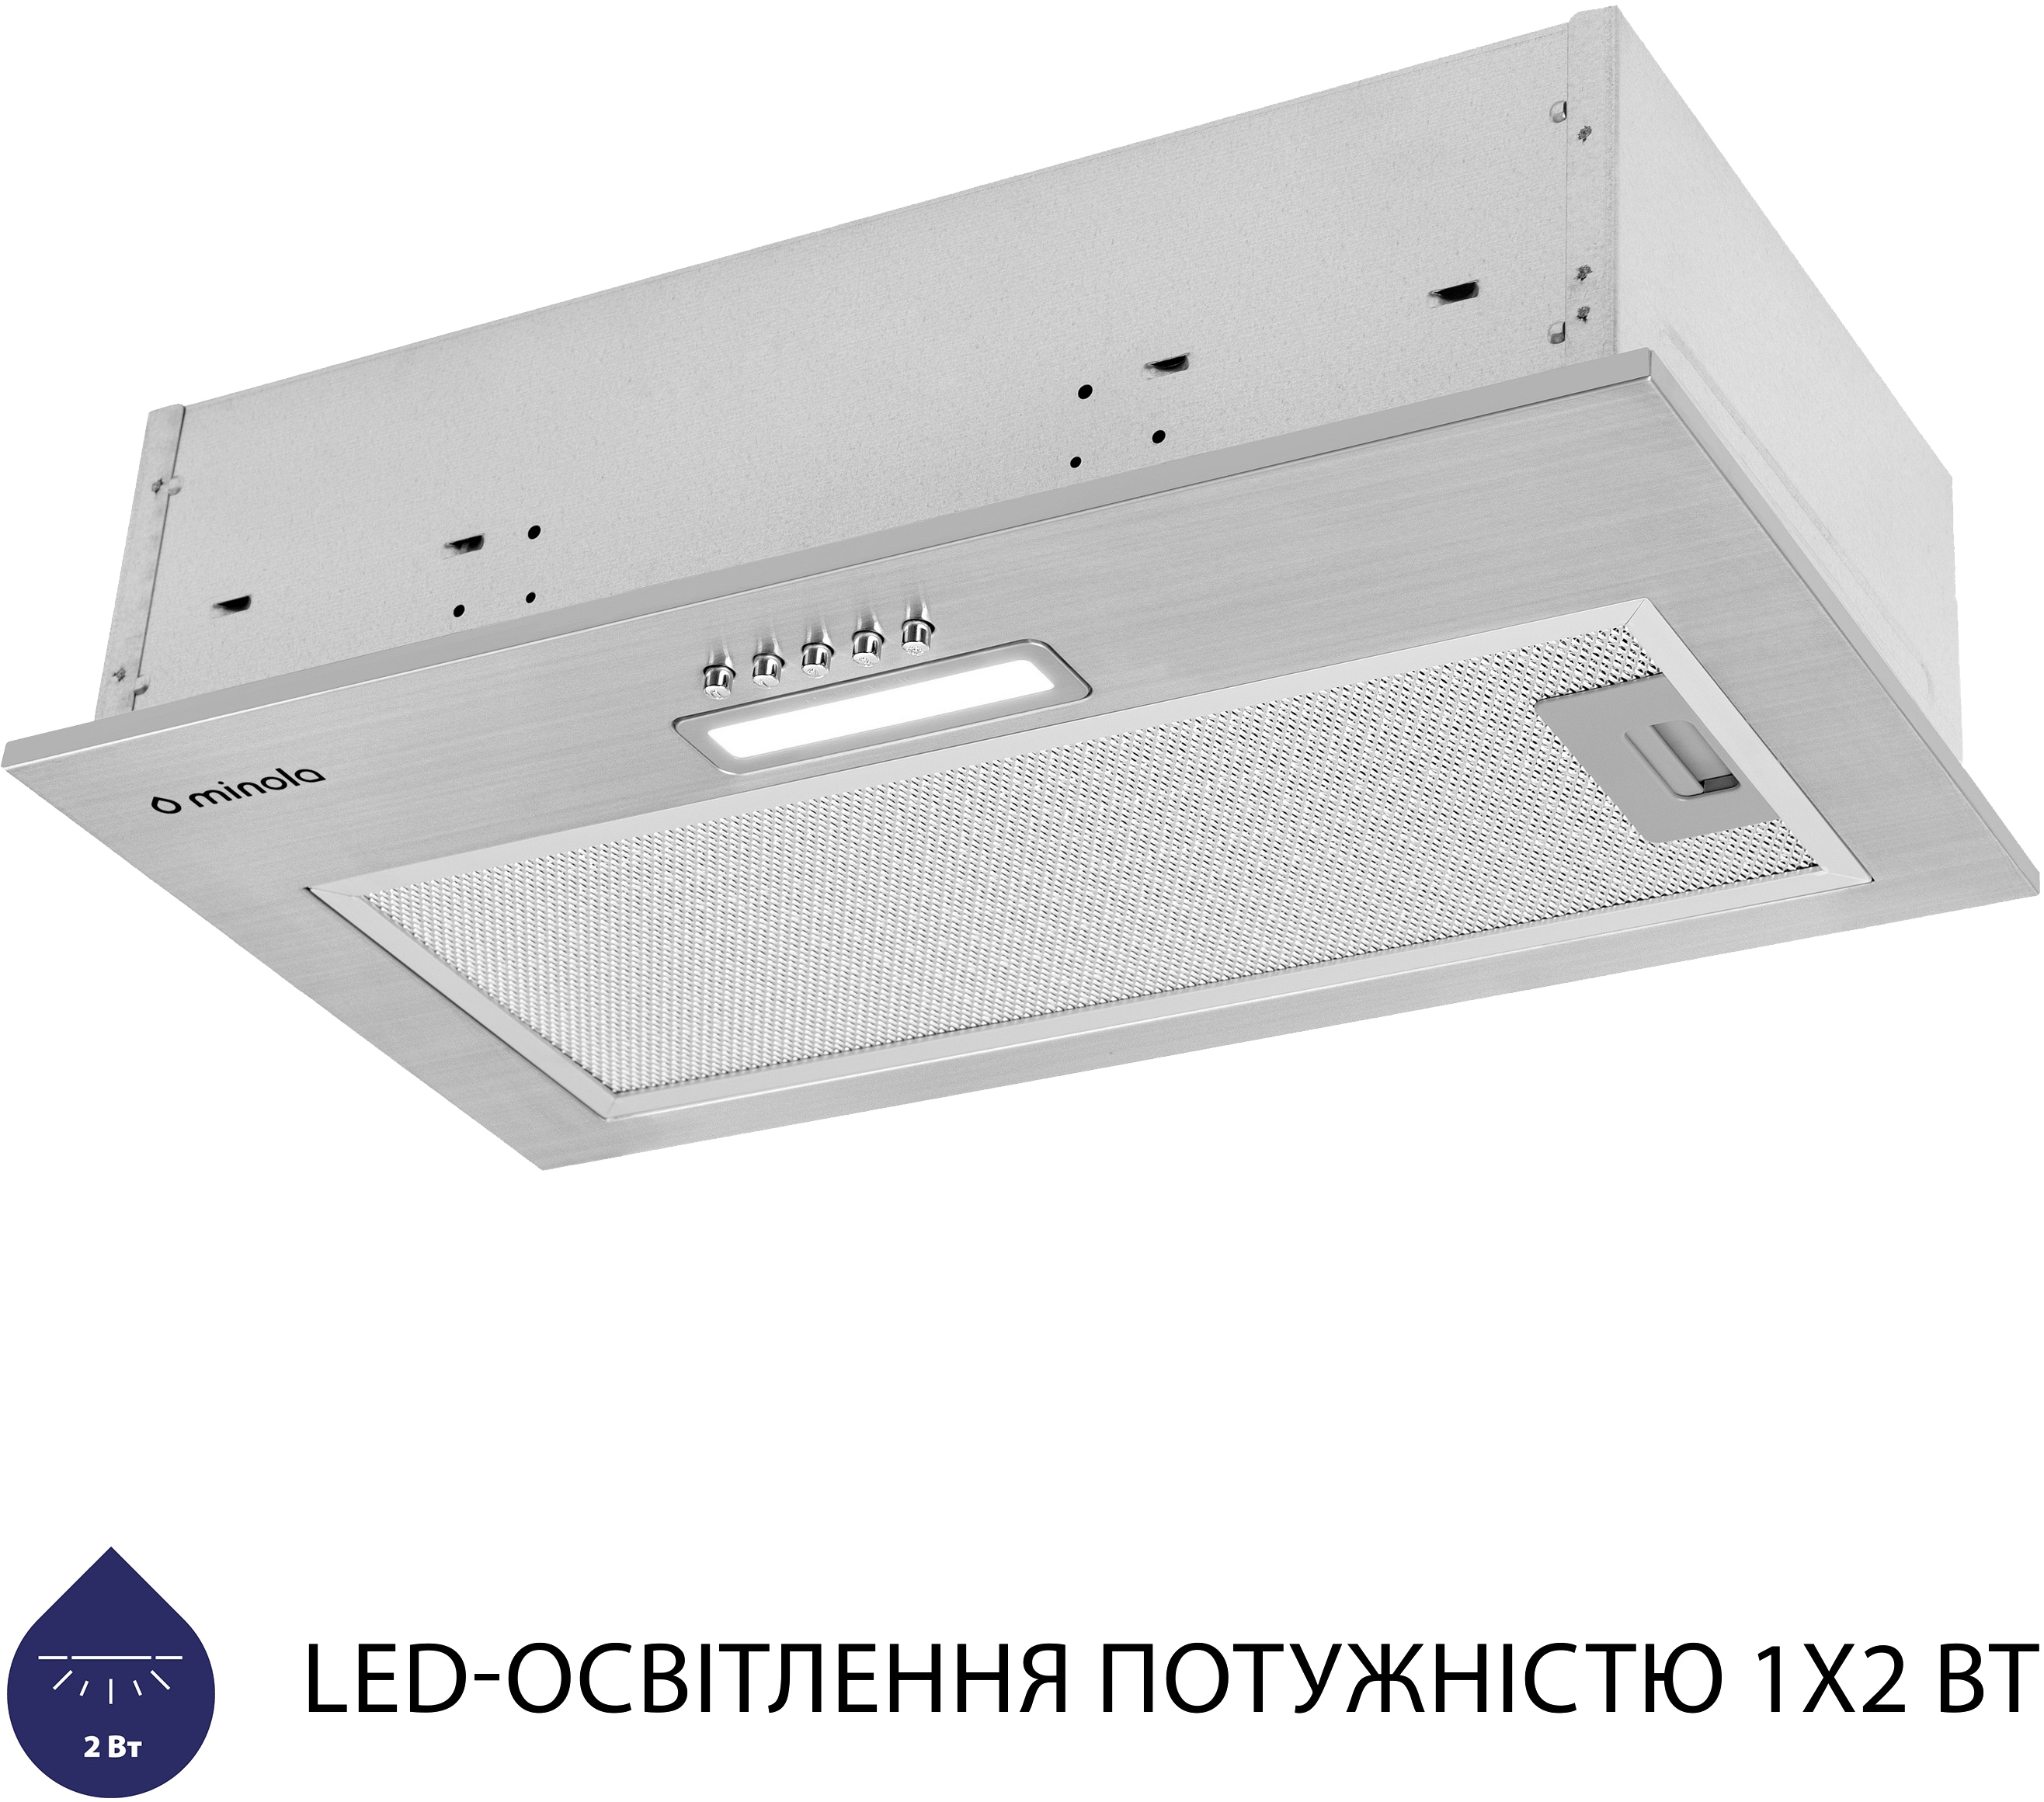 продаємо Minola HBI 5025 I LED в Україні - фото 4